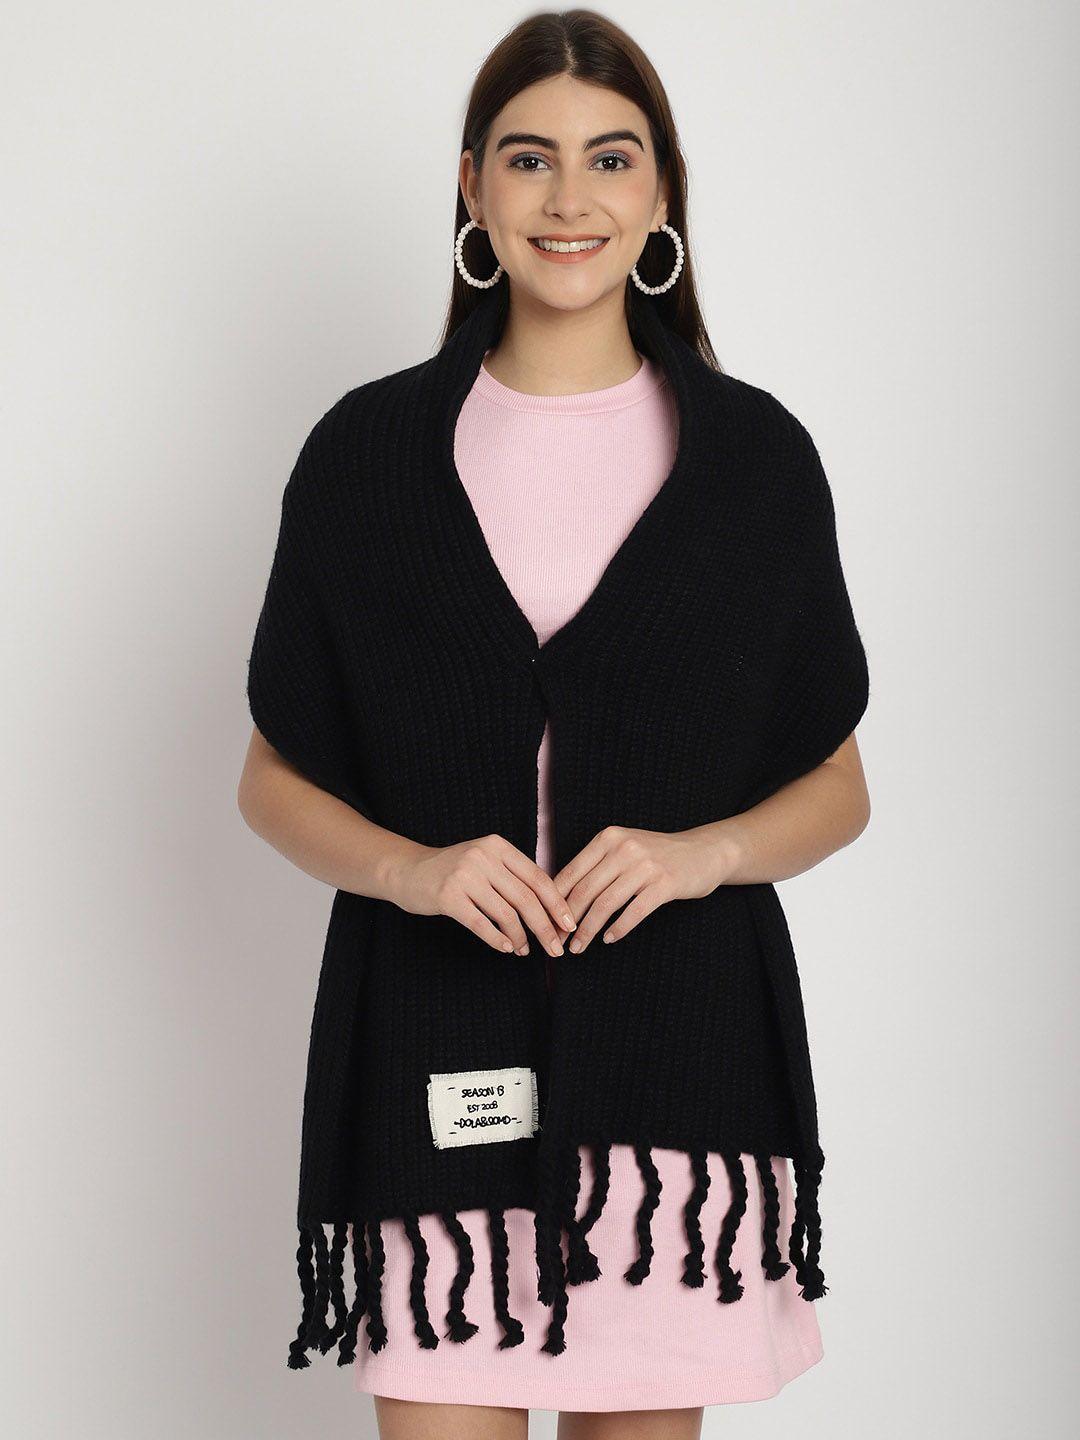 ellis-knitted-acrylic-shrug